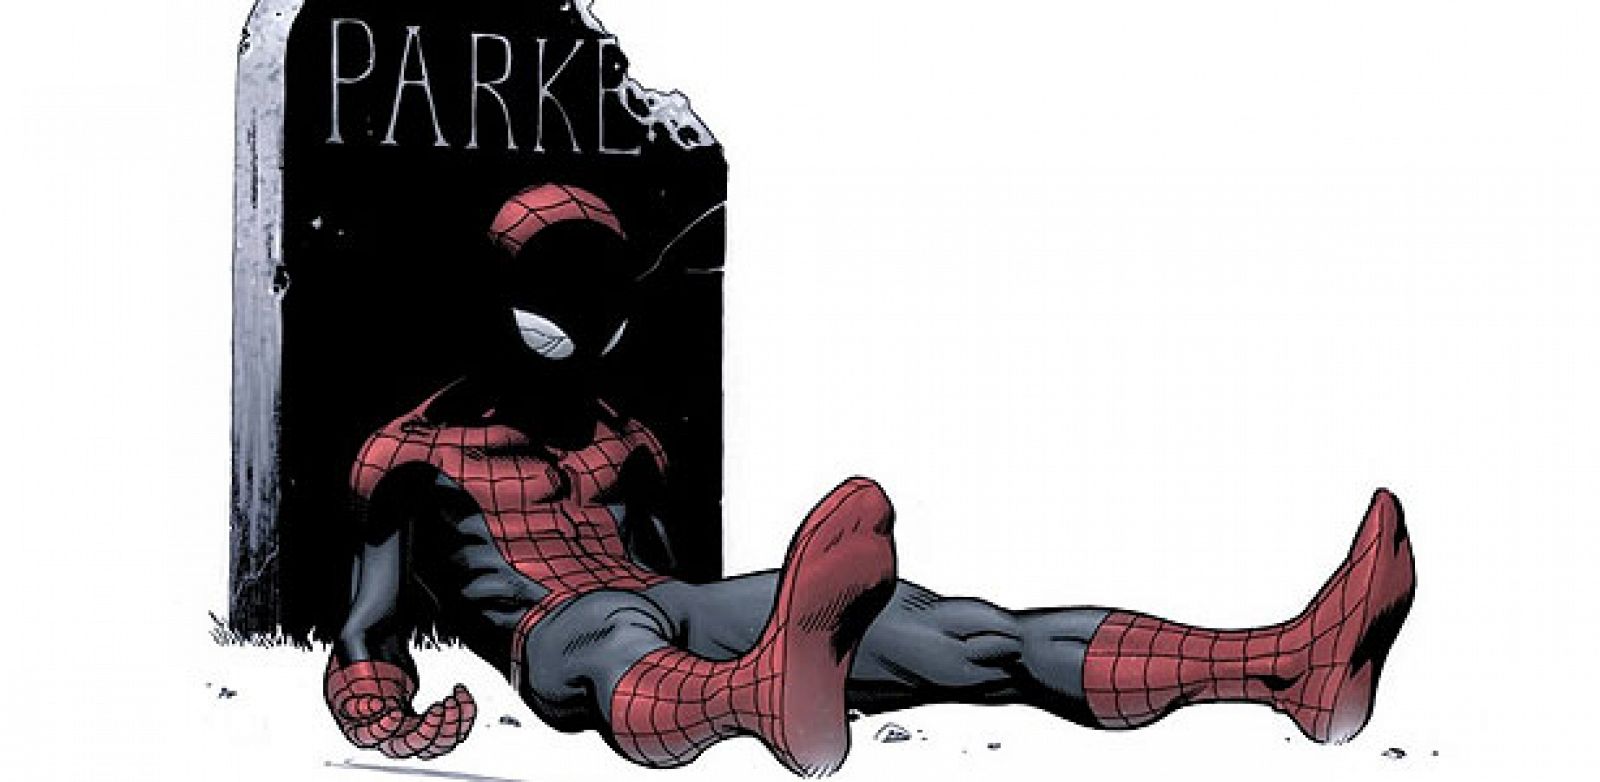 Viñeta que demuestra que no es la primera vez que Spiderman parece morir